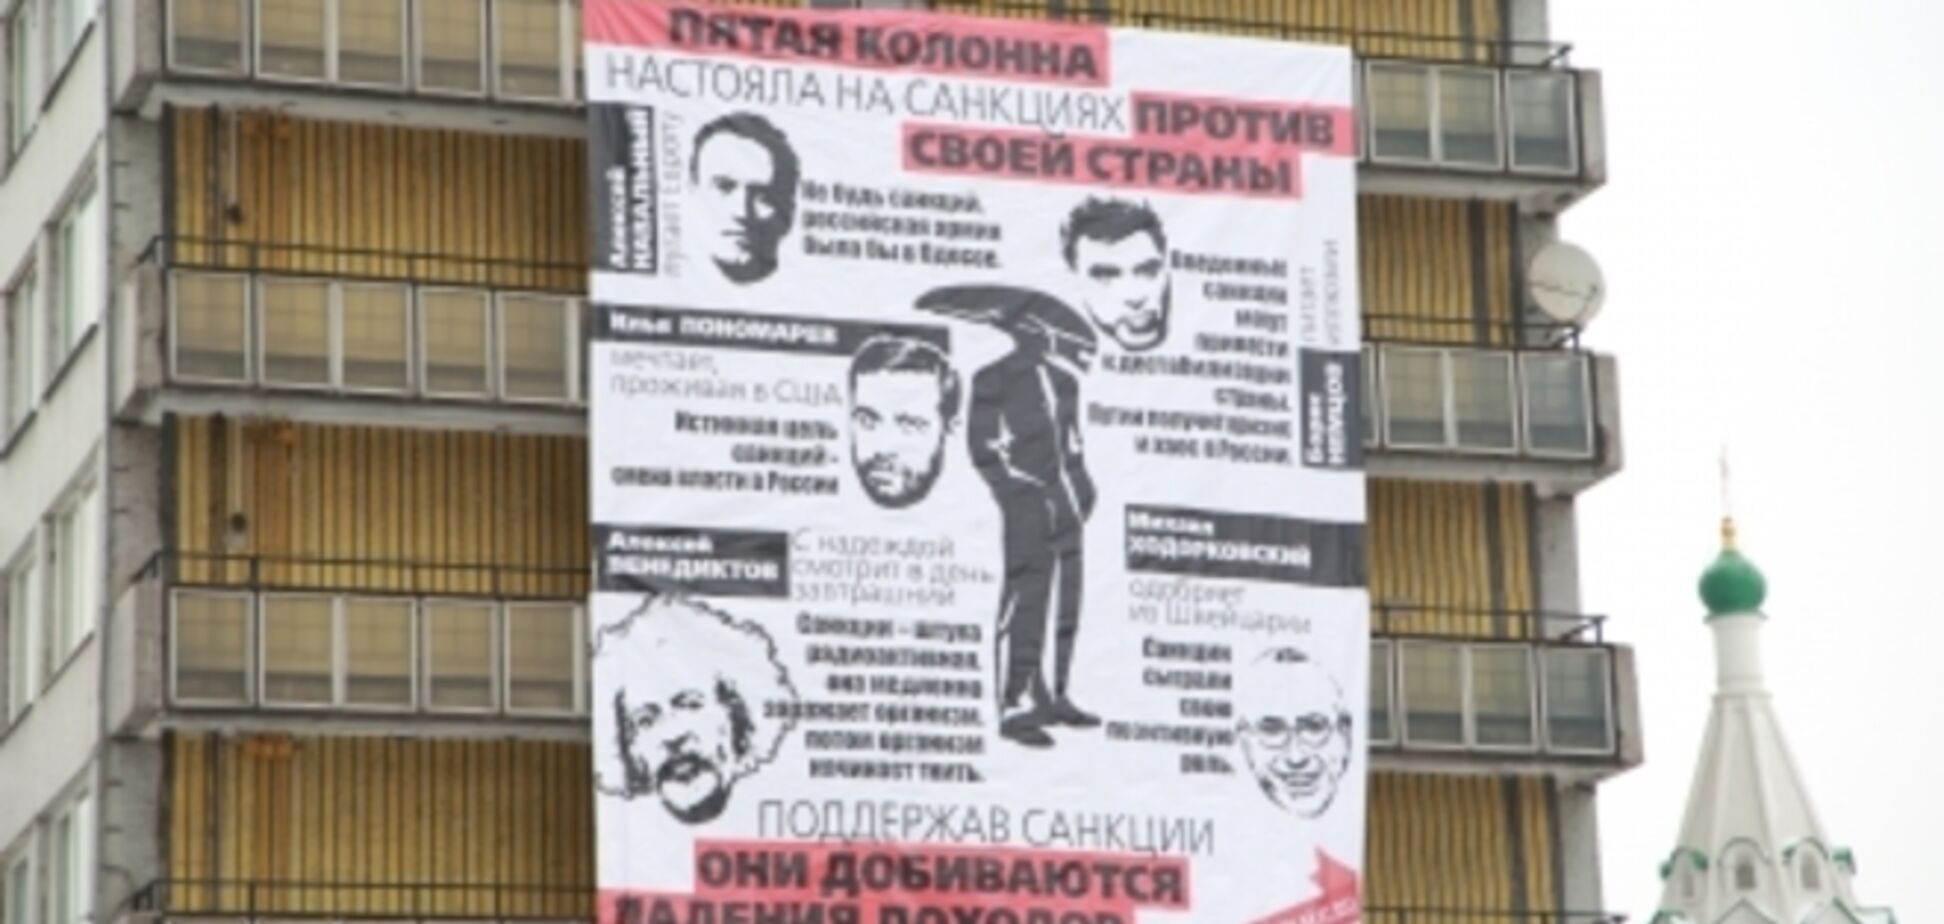 'Они работают против своей страны': в центре Москвы вывесили баннер про 'пятую колонну'